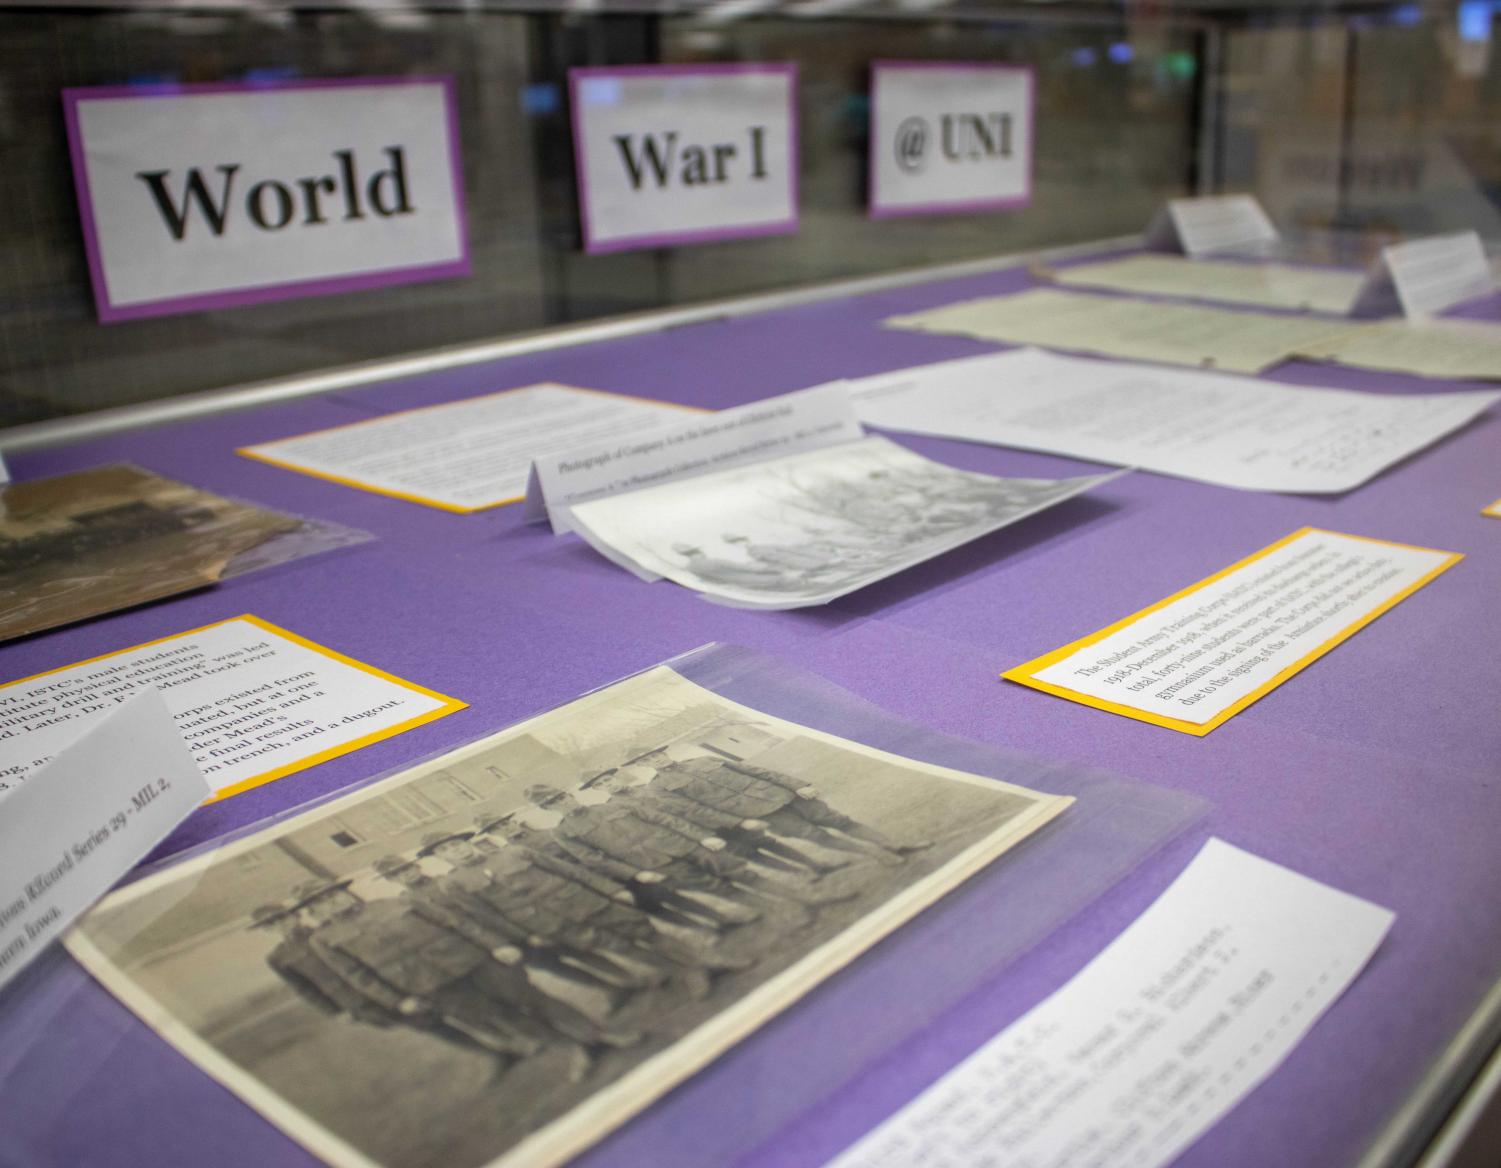 Library+exhibit+explores+WWI+impact